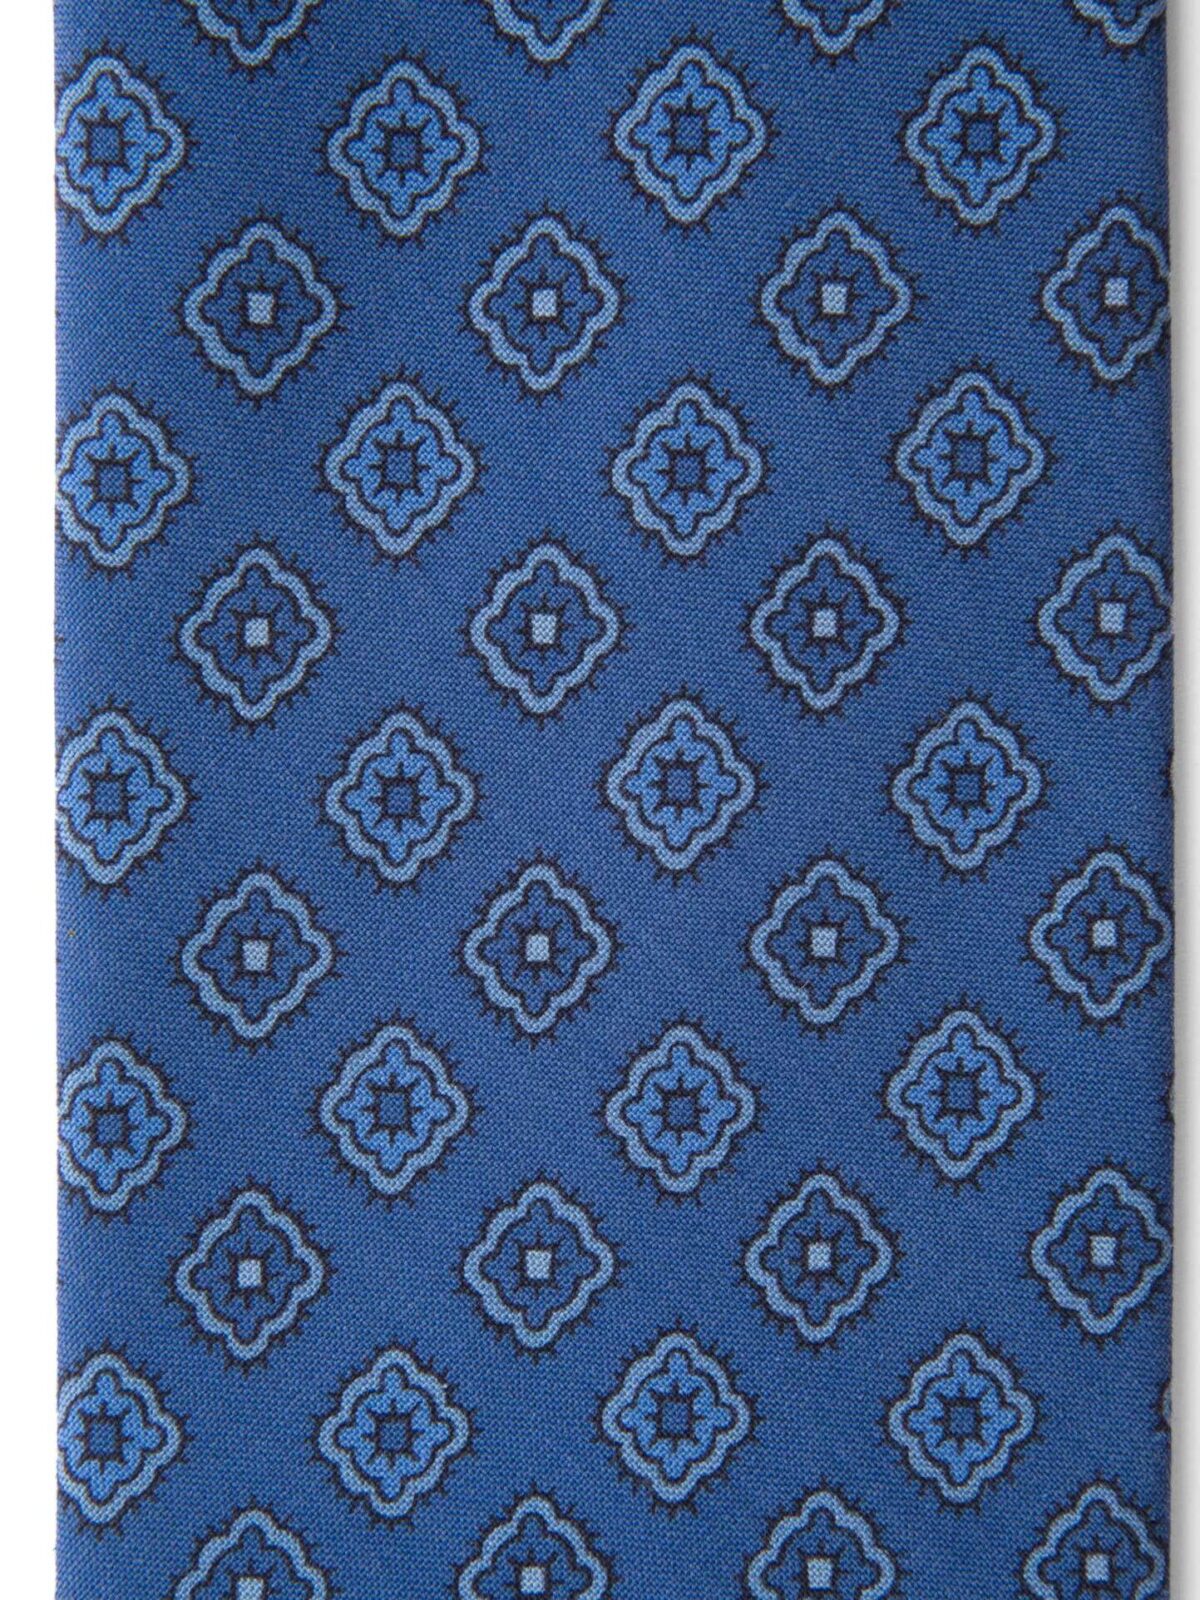 Ocean Blue Foulard Print Silk Tie by Proper Cloth